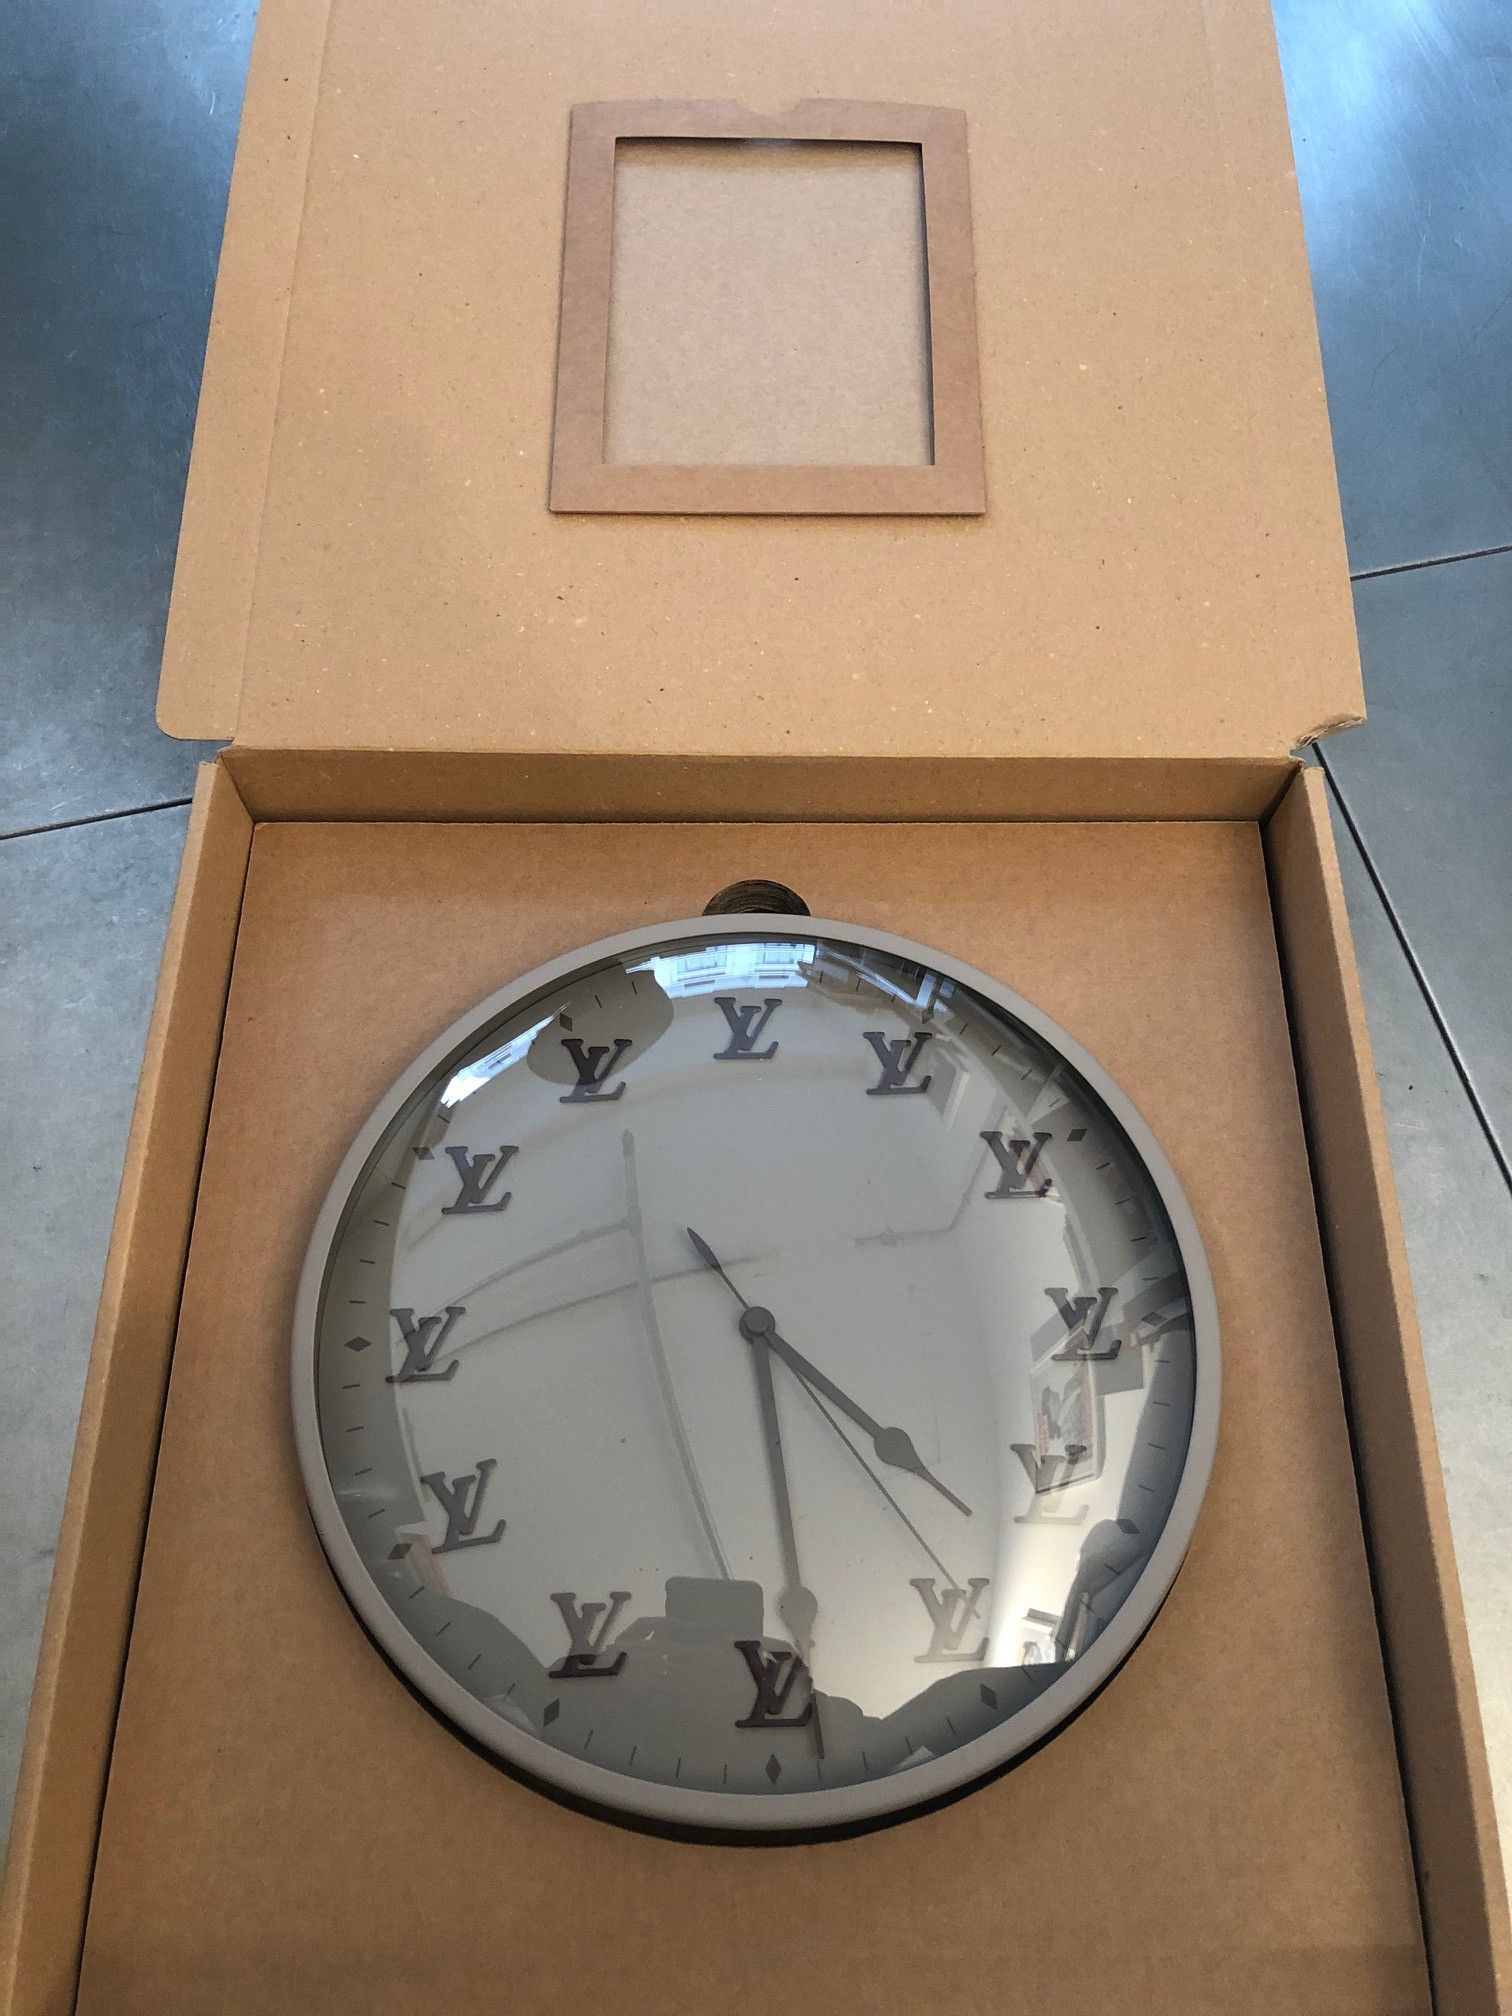 Louis Vuitton Virgil Abloh Clock